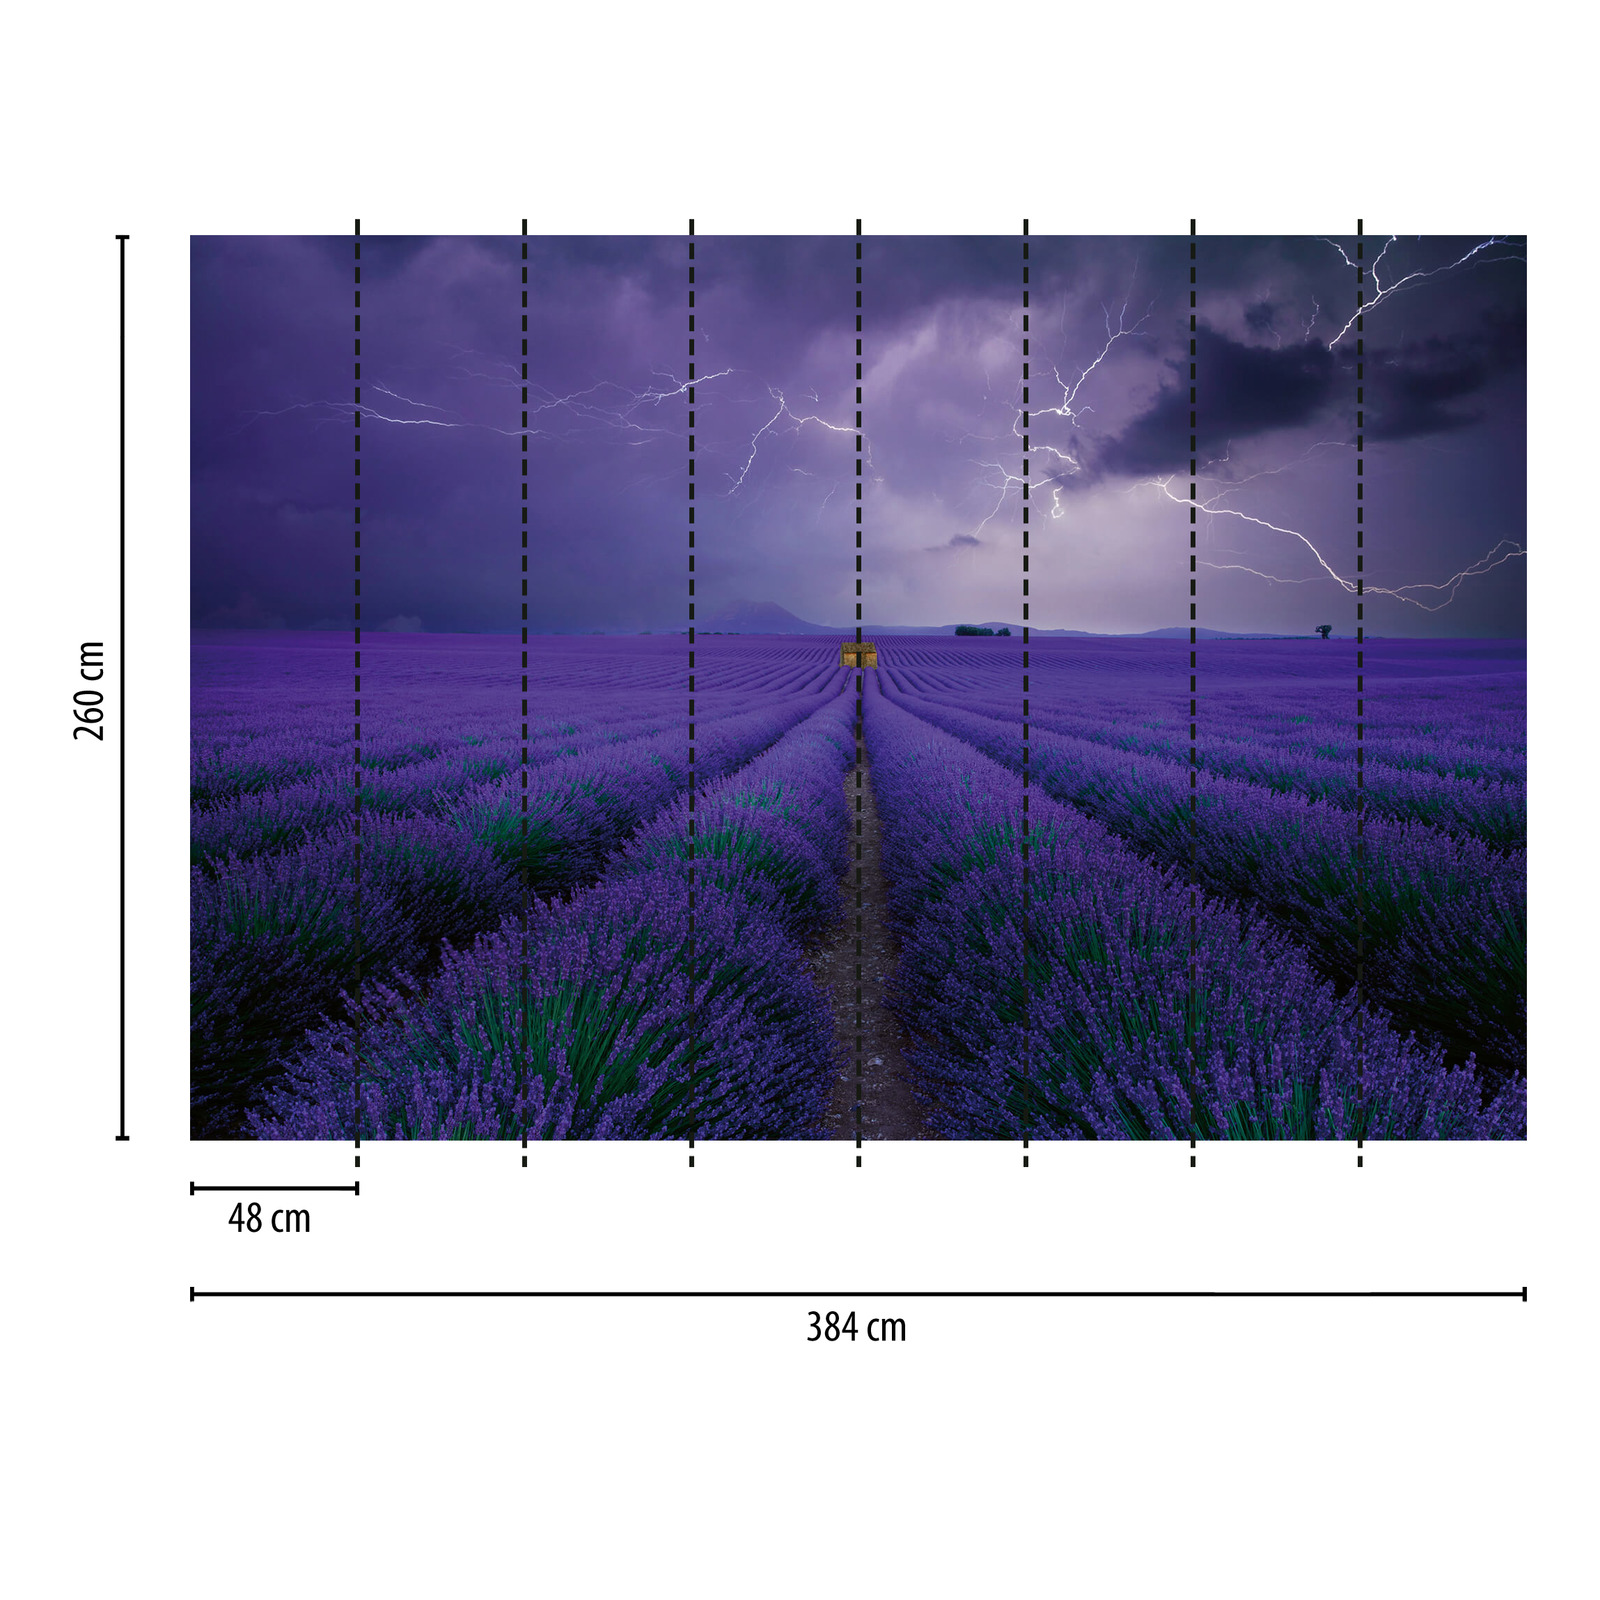             Fototapete Lavendel Feld – Violett, Grün, Braun
        